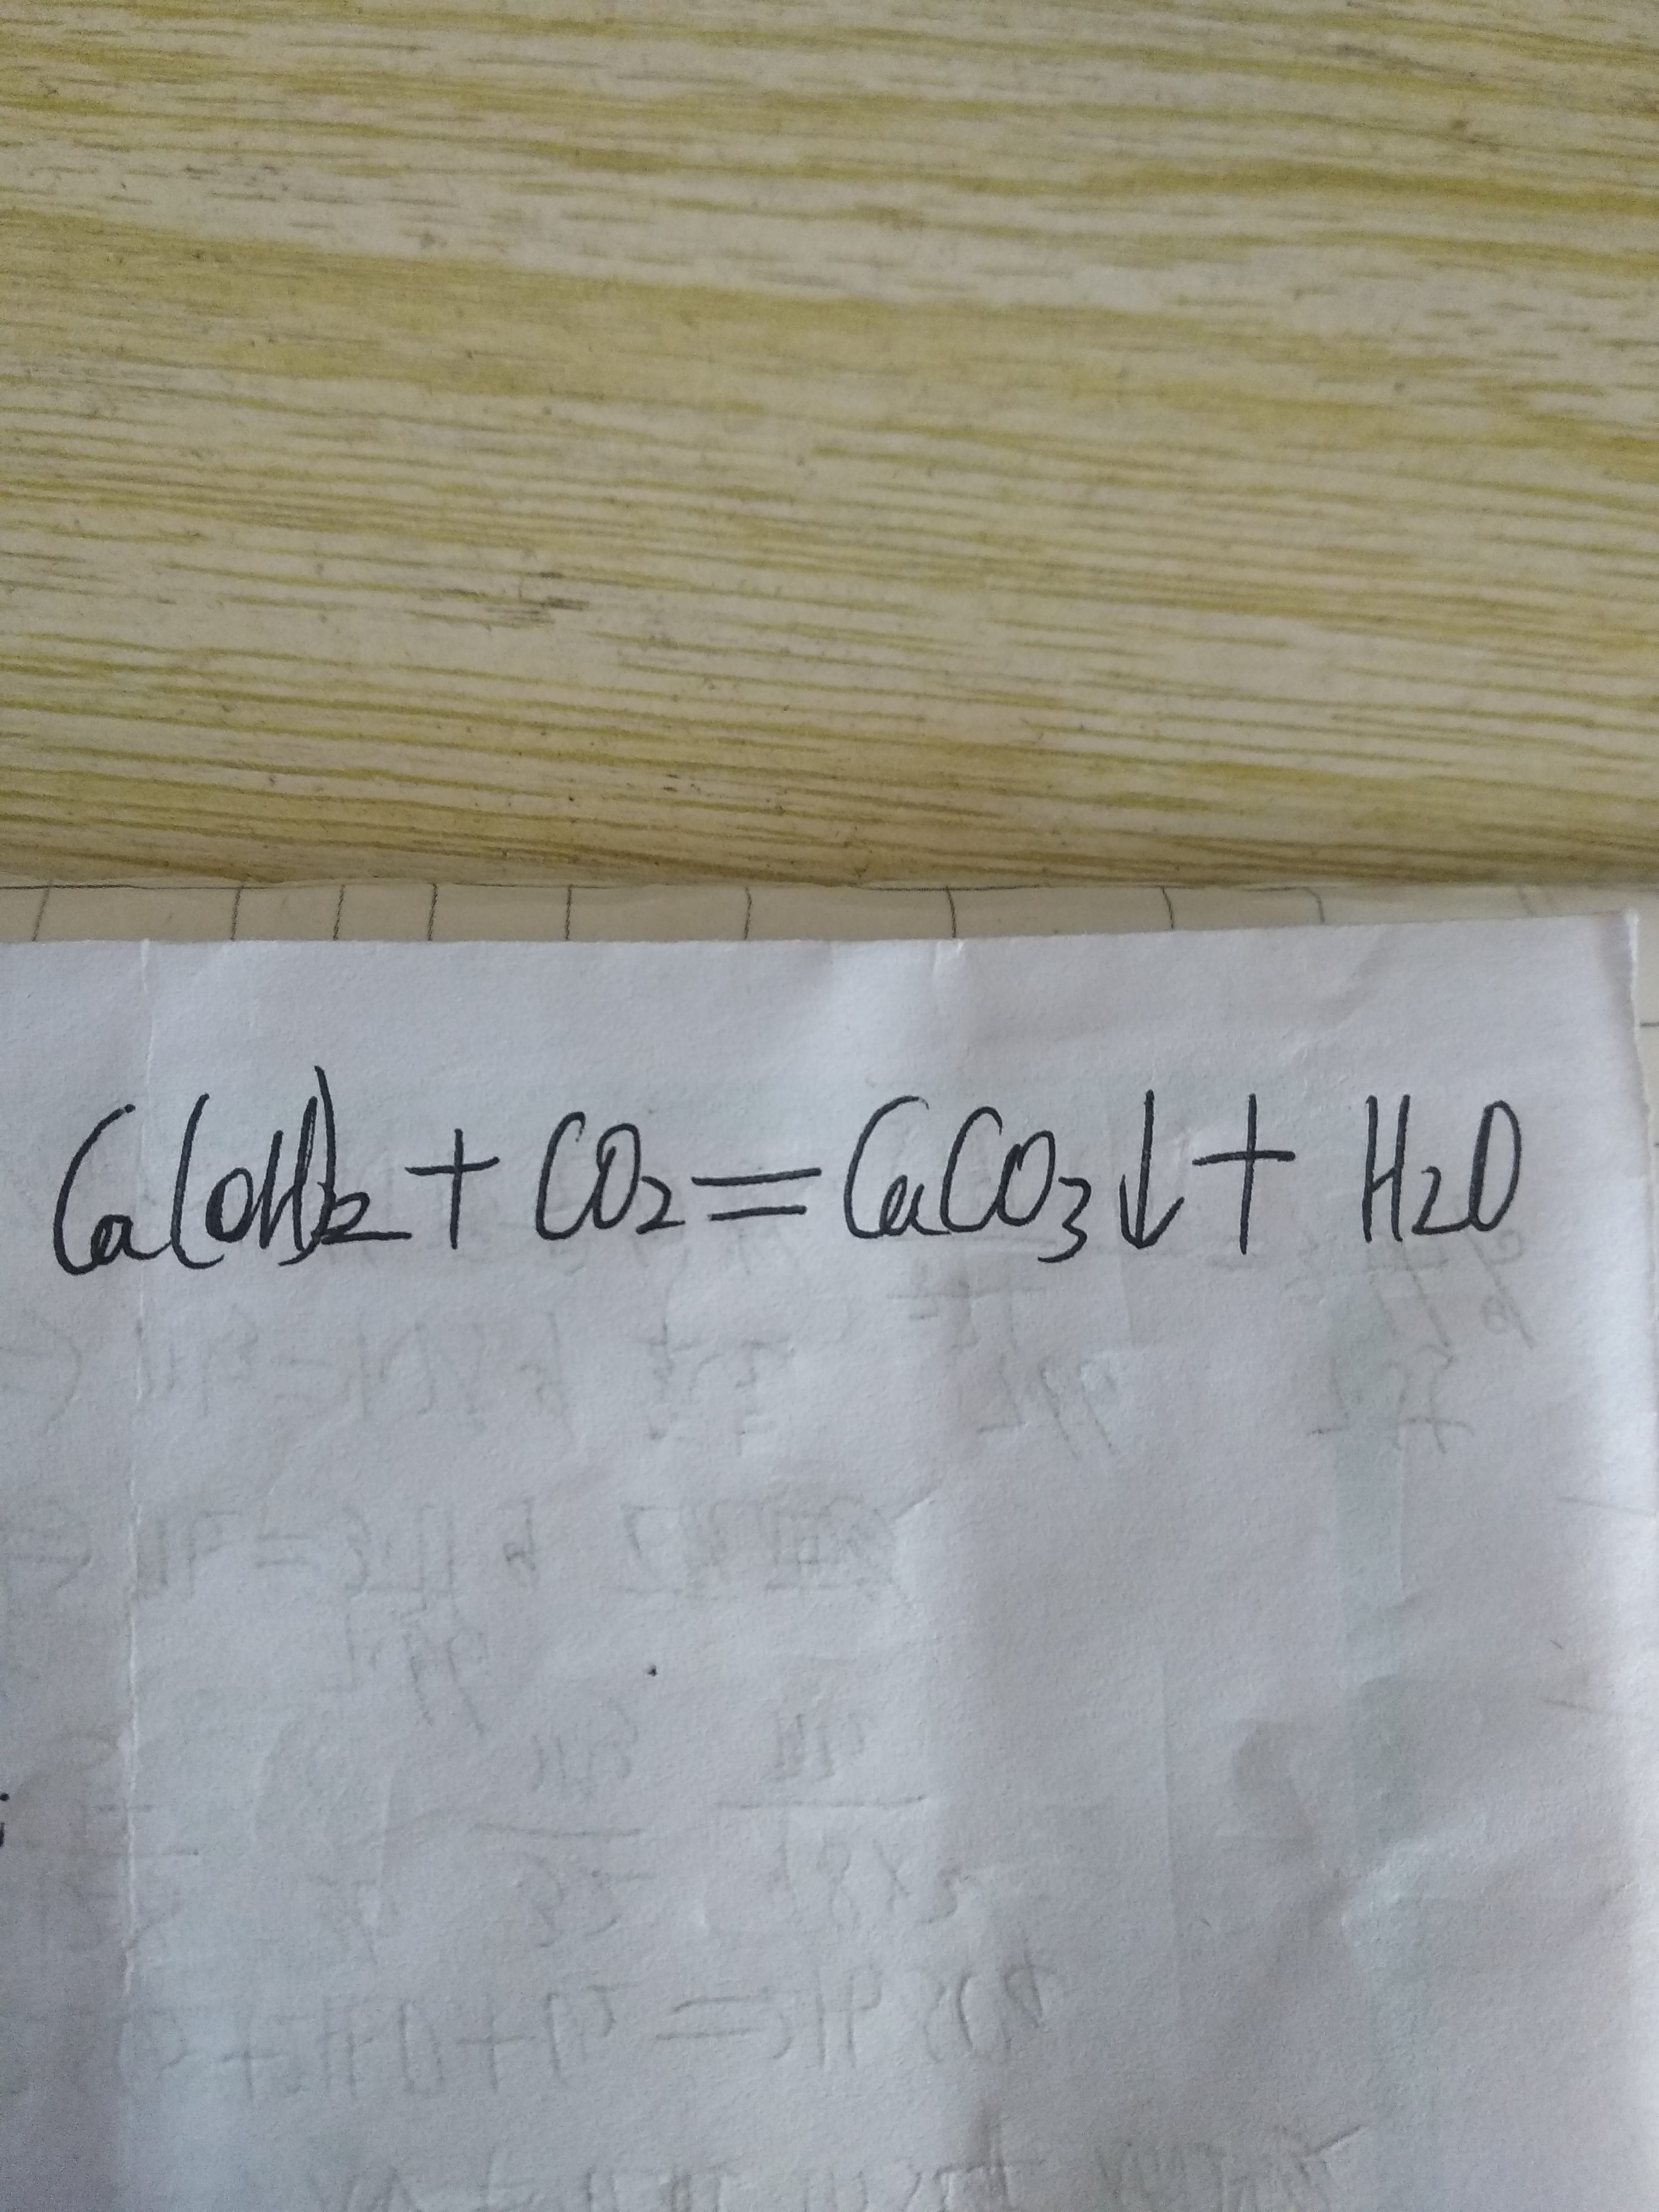 二氧化碳与氢氧化钙反应的化学方程式